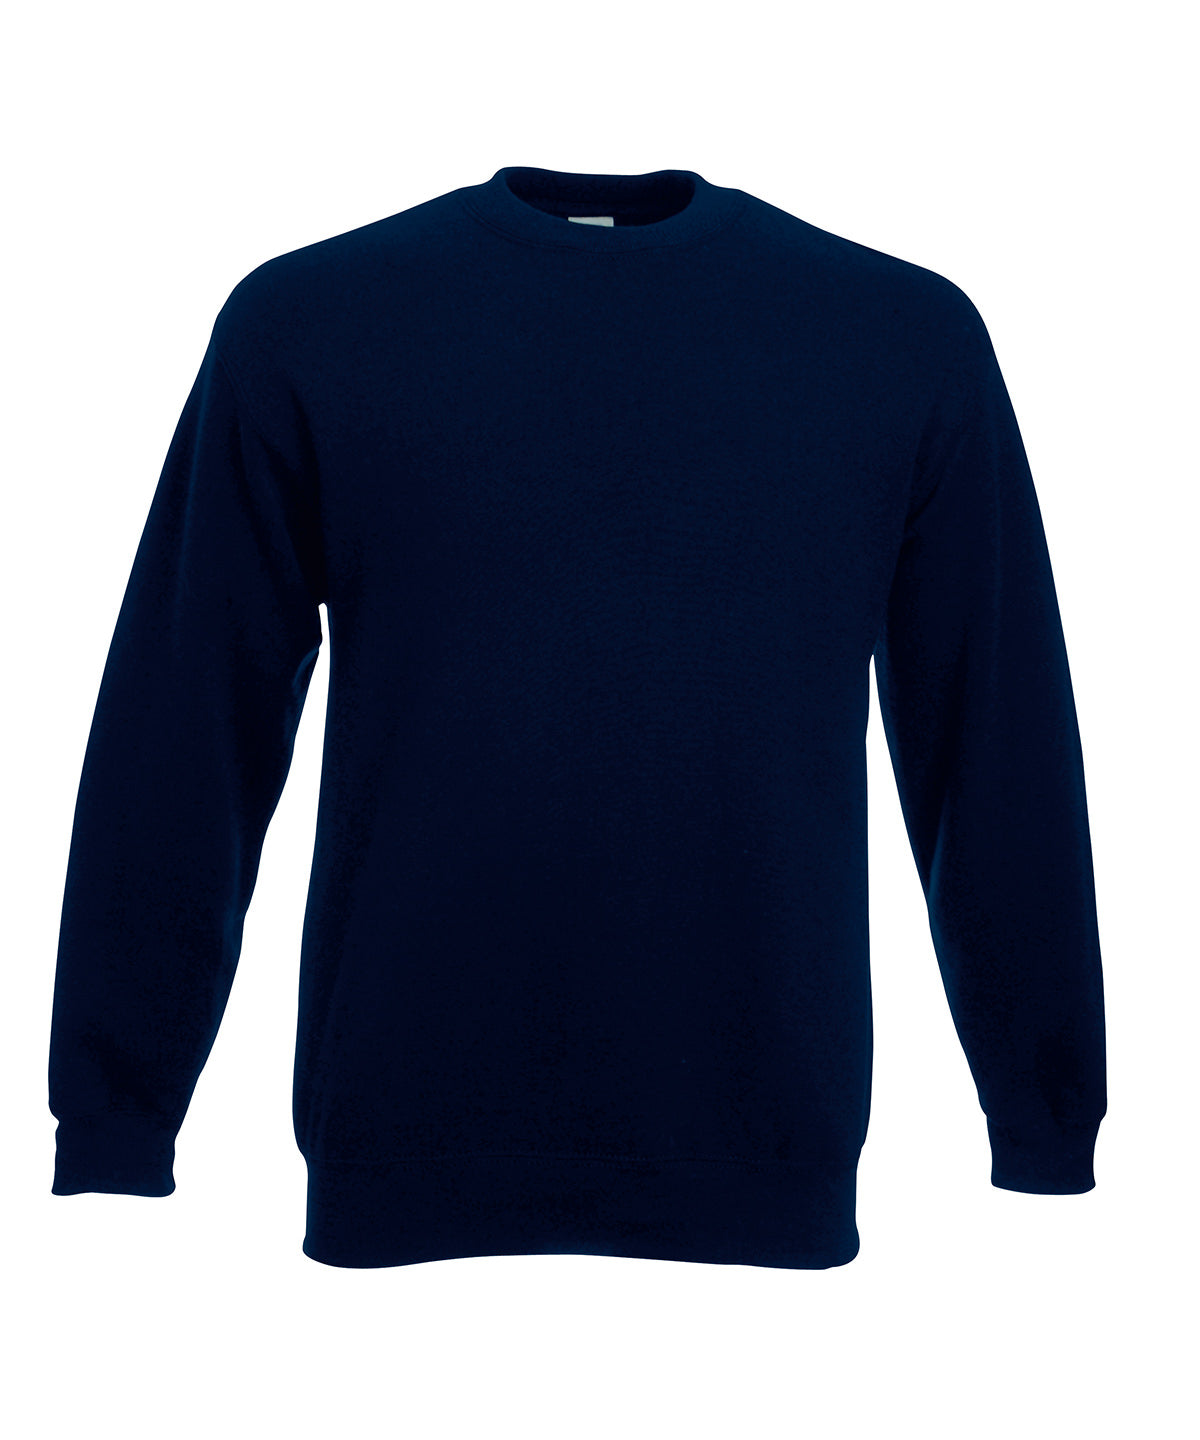 Personalised Sweatshirts - Black Fruit of the Loom Premium 70/30 set-in sweatshirt